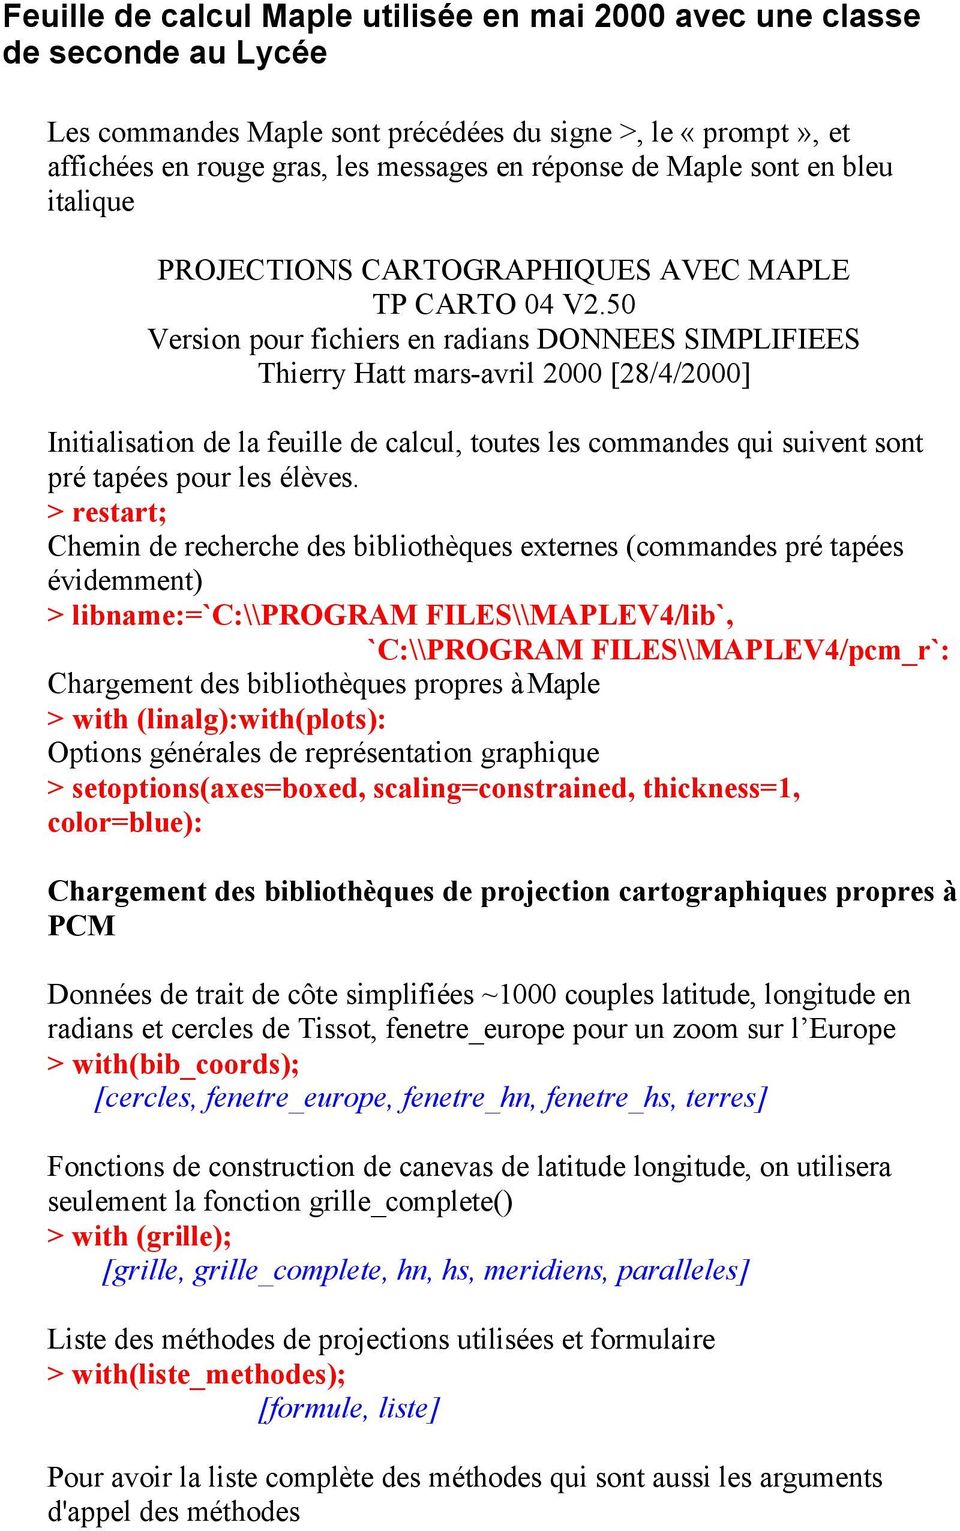 50 Version pour fichiers en radians DONNEES SIMPLIFIEES Thierry Hatt mars-avril 2000 [28/4/2000] Initialisation de la feuille de calcul, toutes les commandes qui suivent sont pré tapées pour les